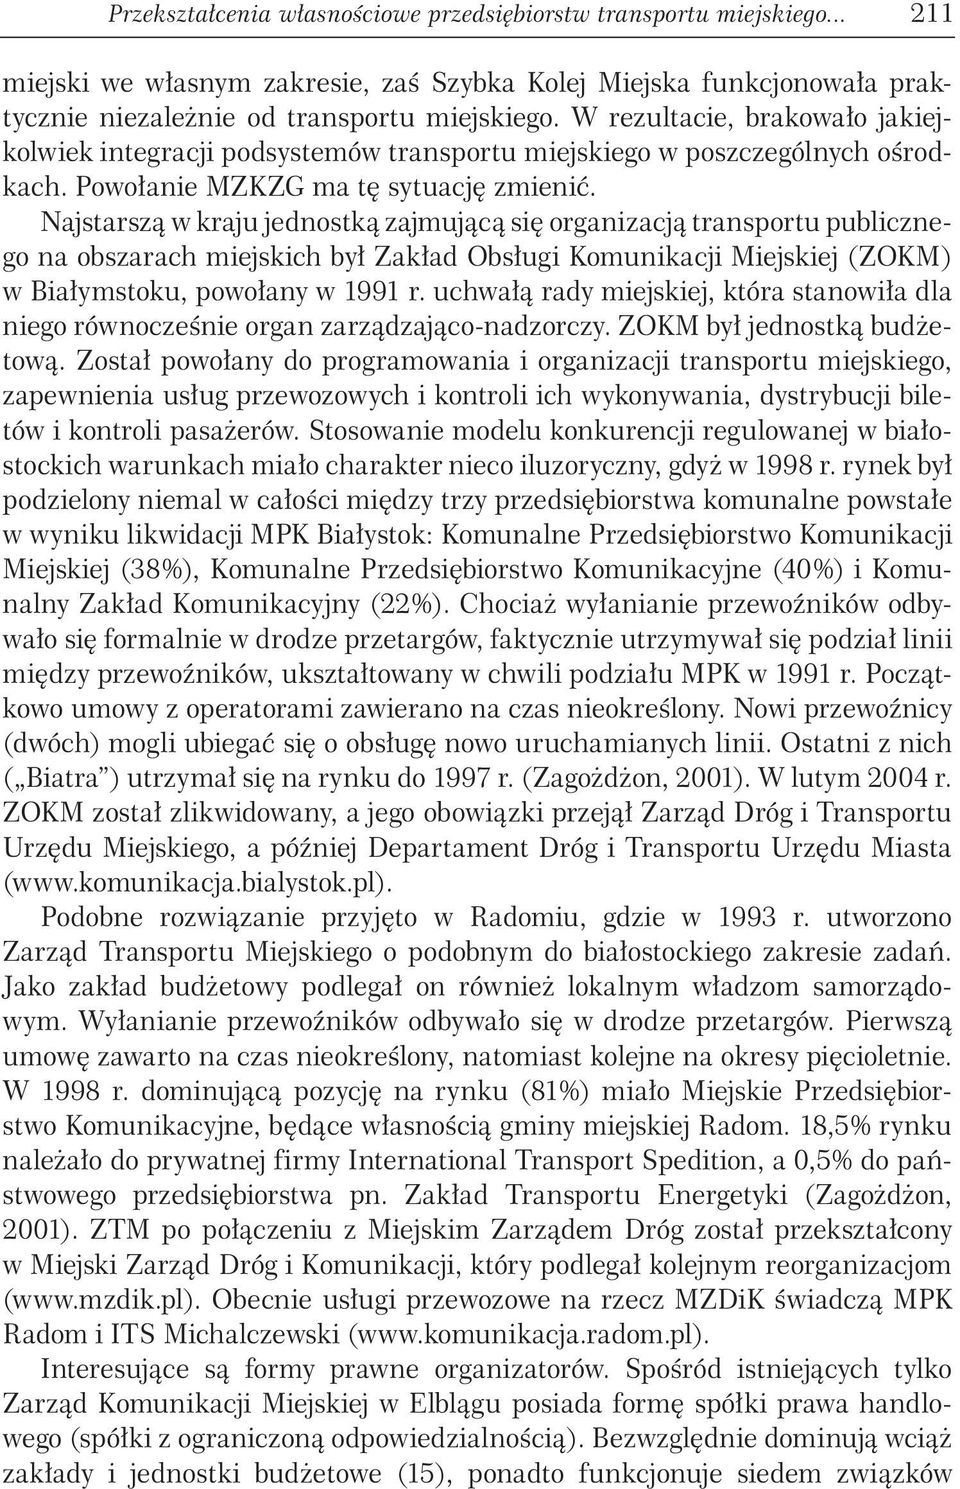 Najstarszą w kraju jednostką zajmującą się organizacją transportu publicznego na obszarach miejskich był Zakład Obsługi Komunikacji Miejskiej (ZOKM) w Białymstoku, powołany w 1991 r.